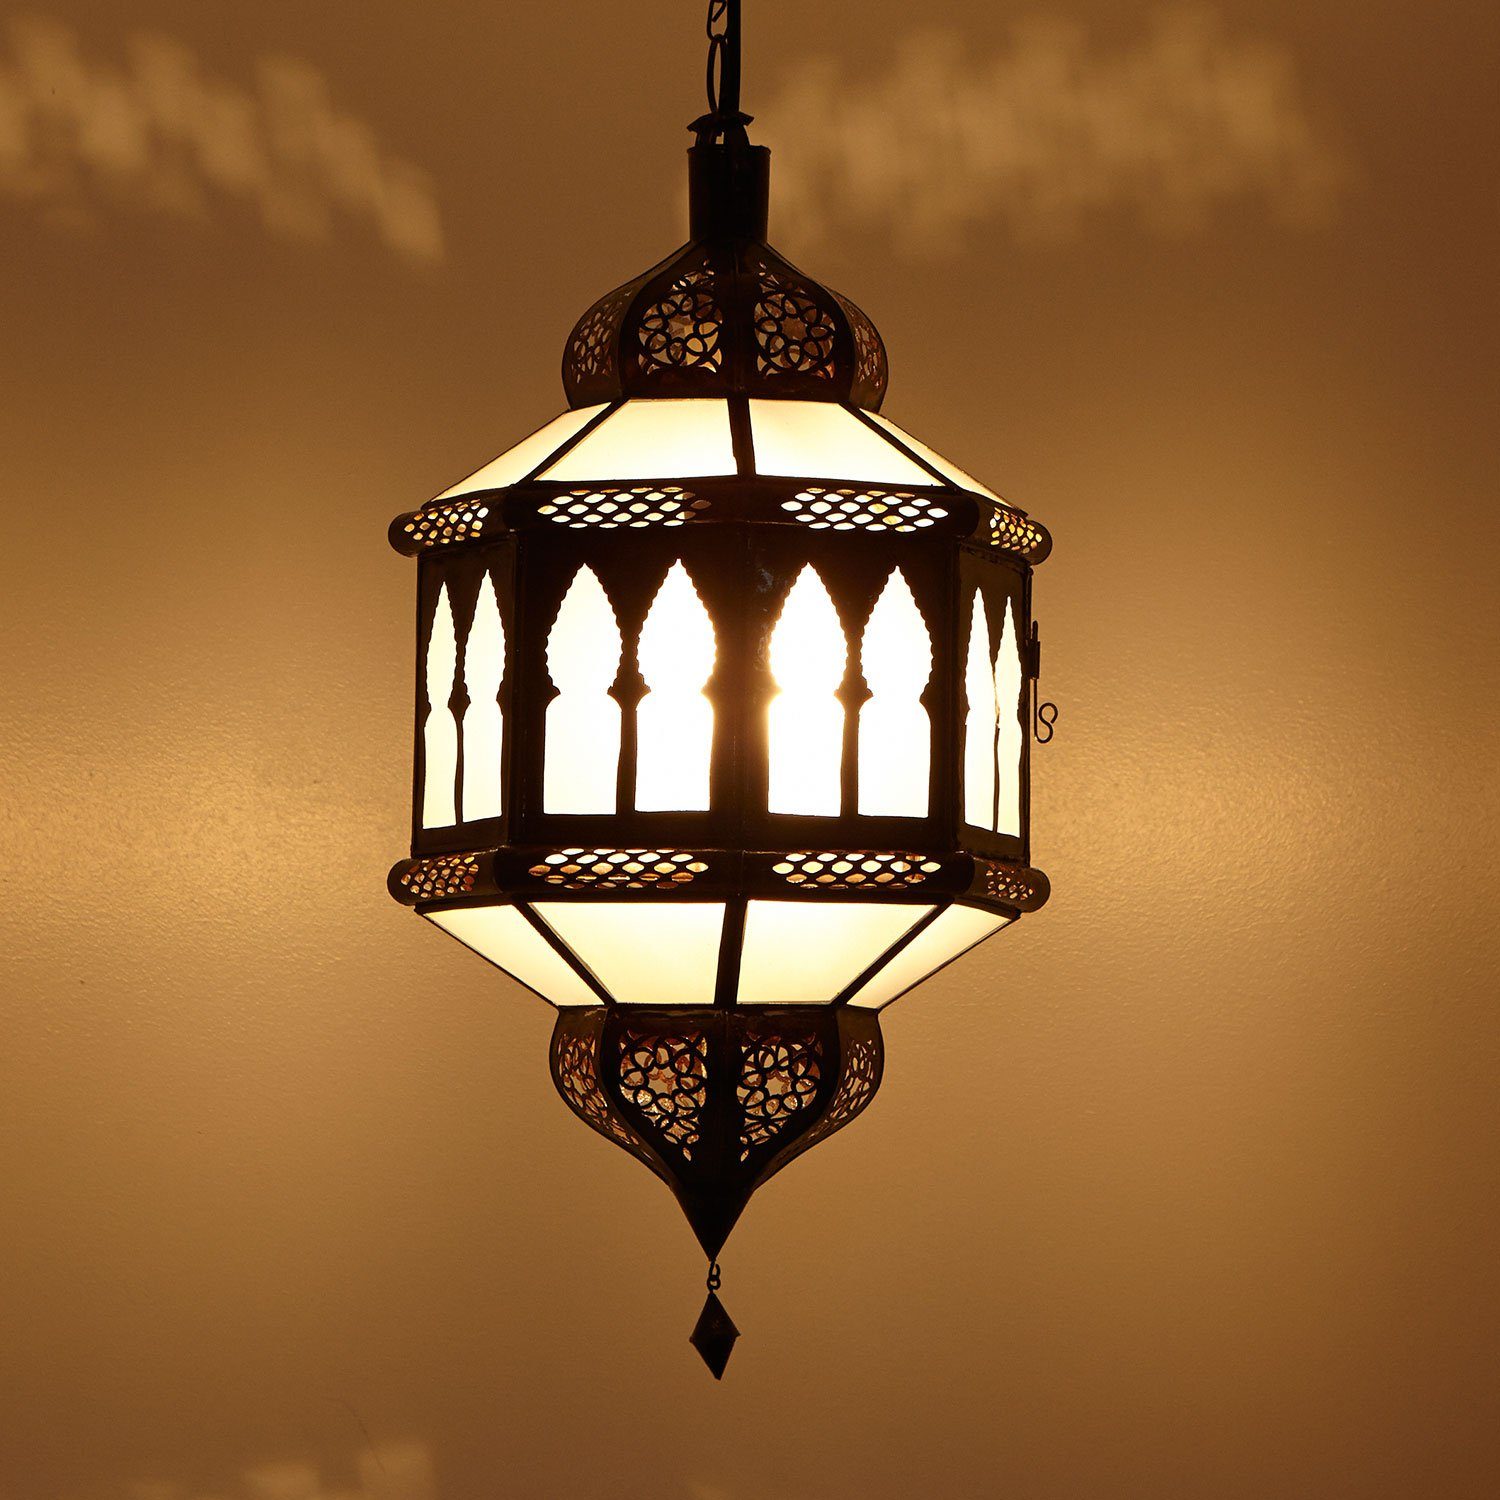 Marokkanische Lampe orientalische Pendellampe Handmade LeuchteTrombia Biban Weiß 